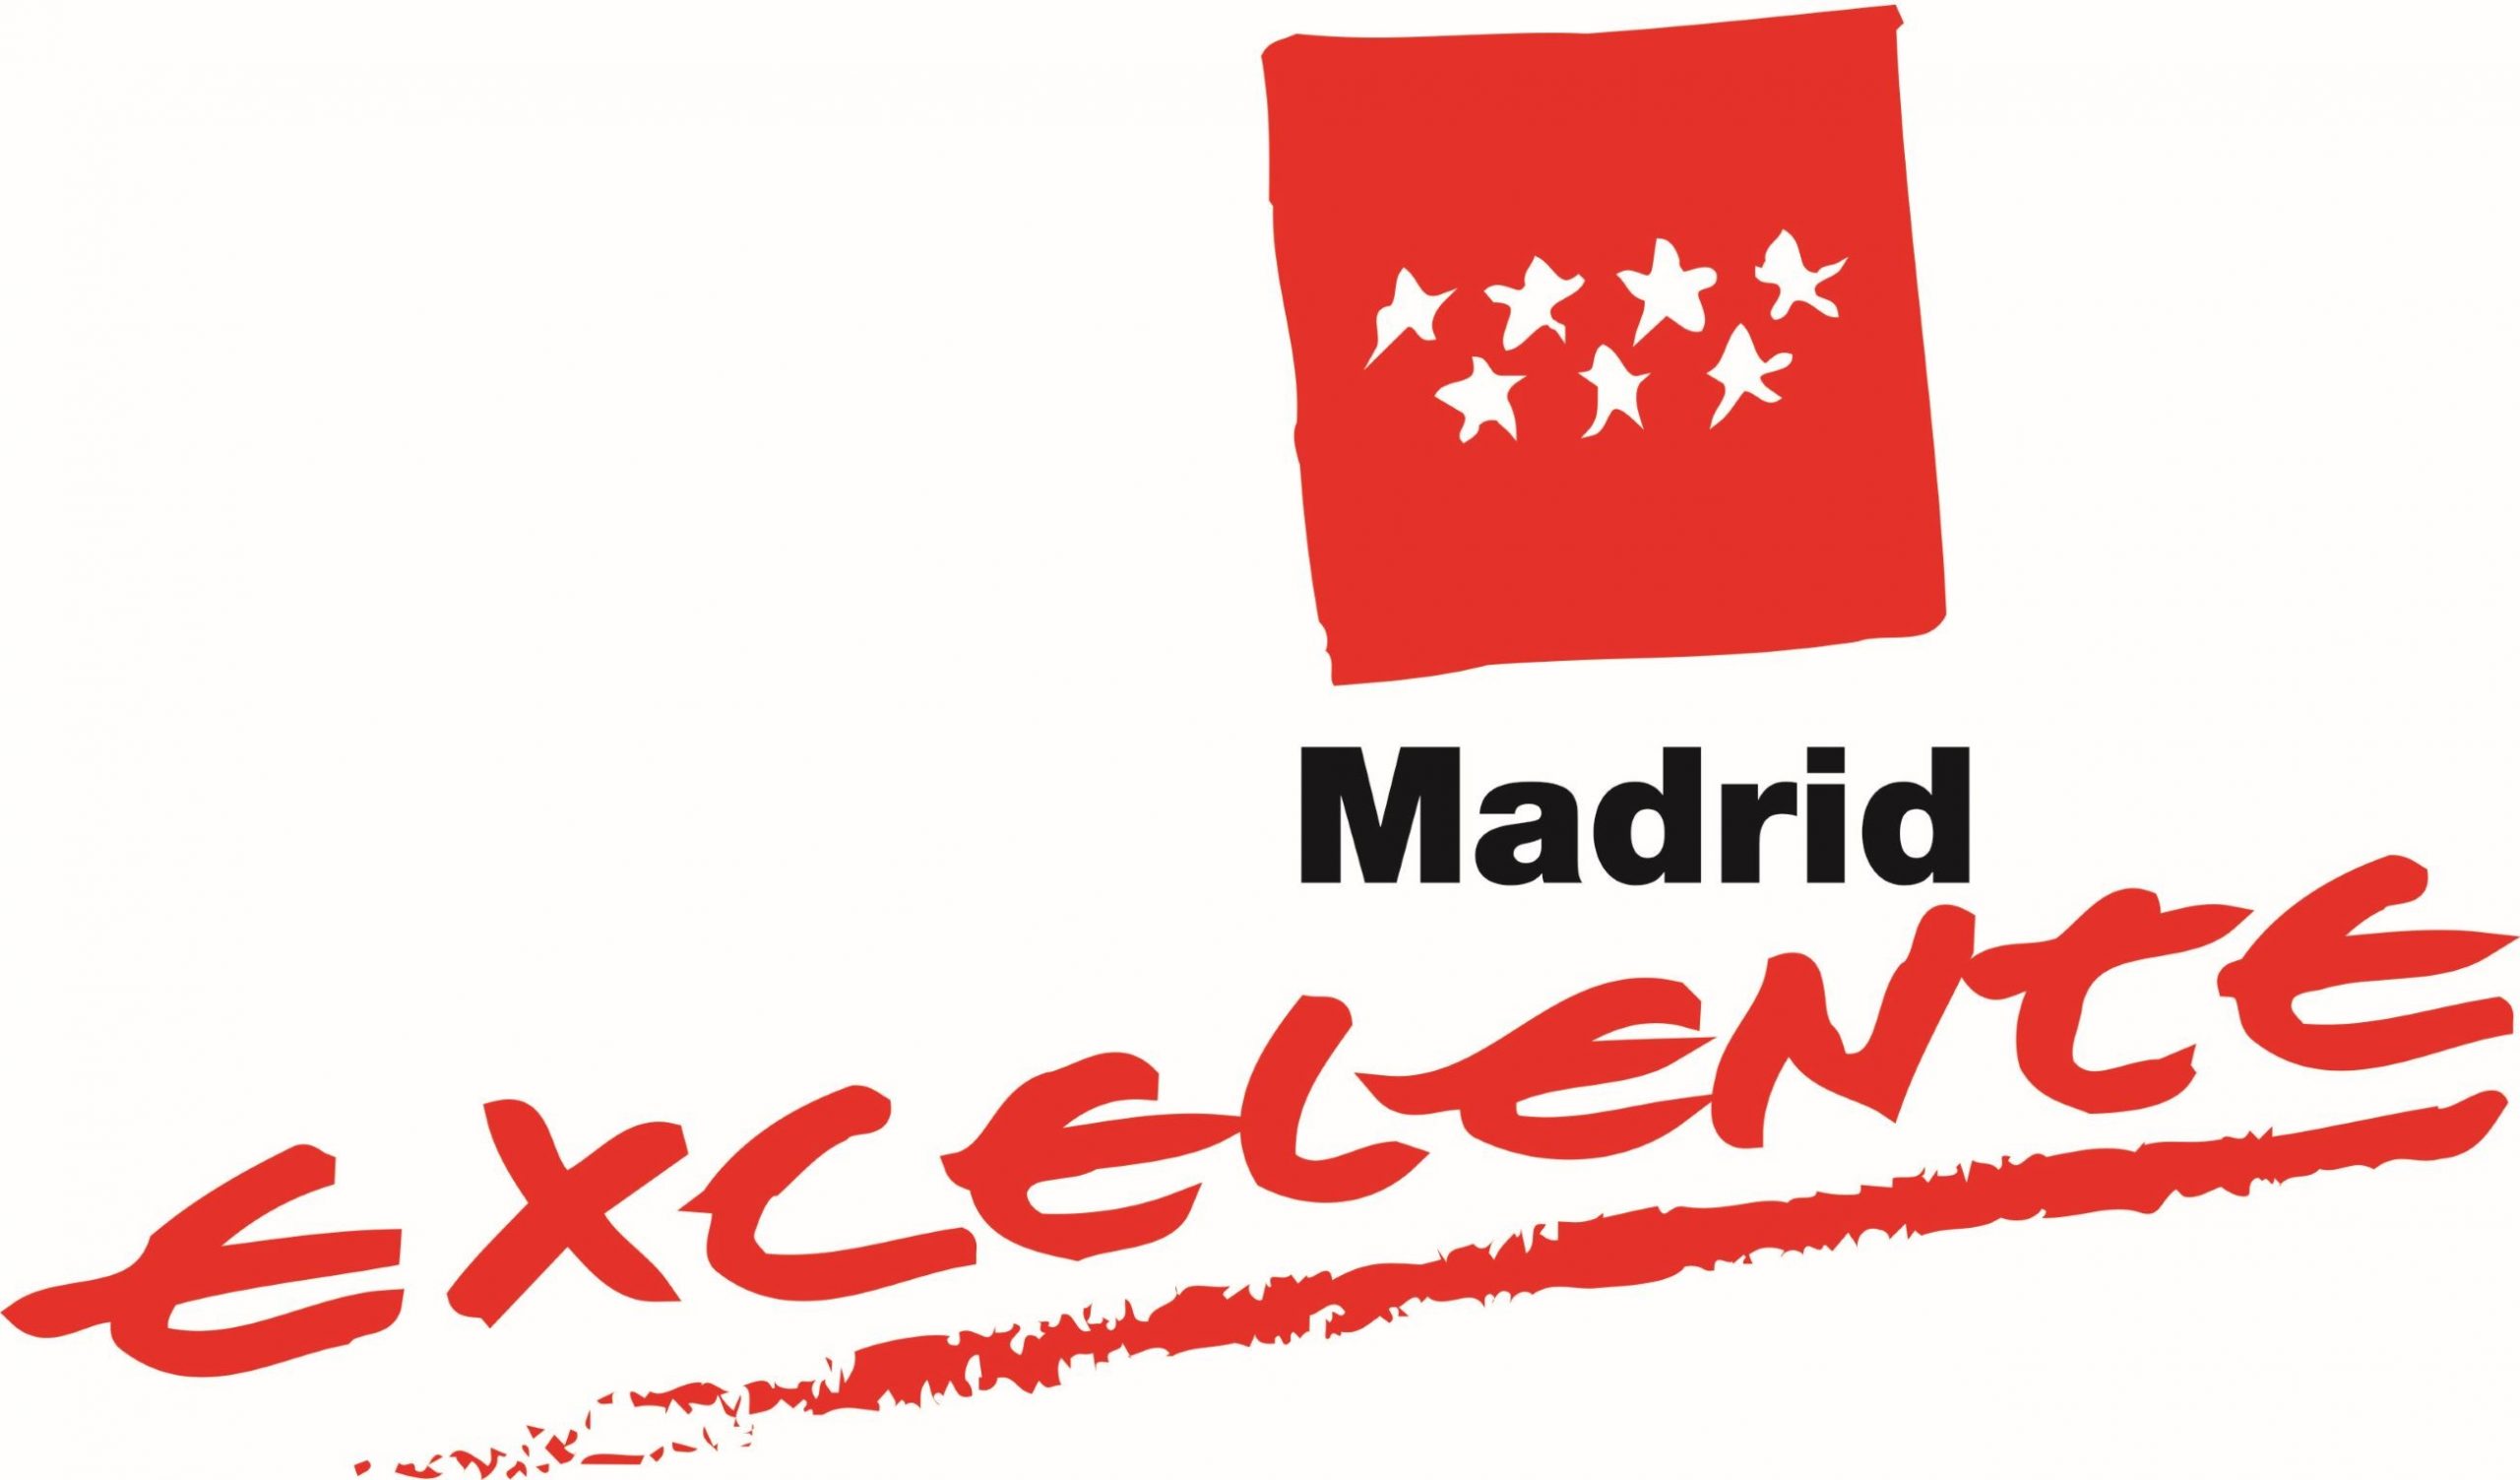 La Comunidad de Madrid constituyó la Fundación Madrid por la Excelencia dentro de la Consejería de Economía y Hacienda.